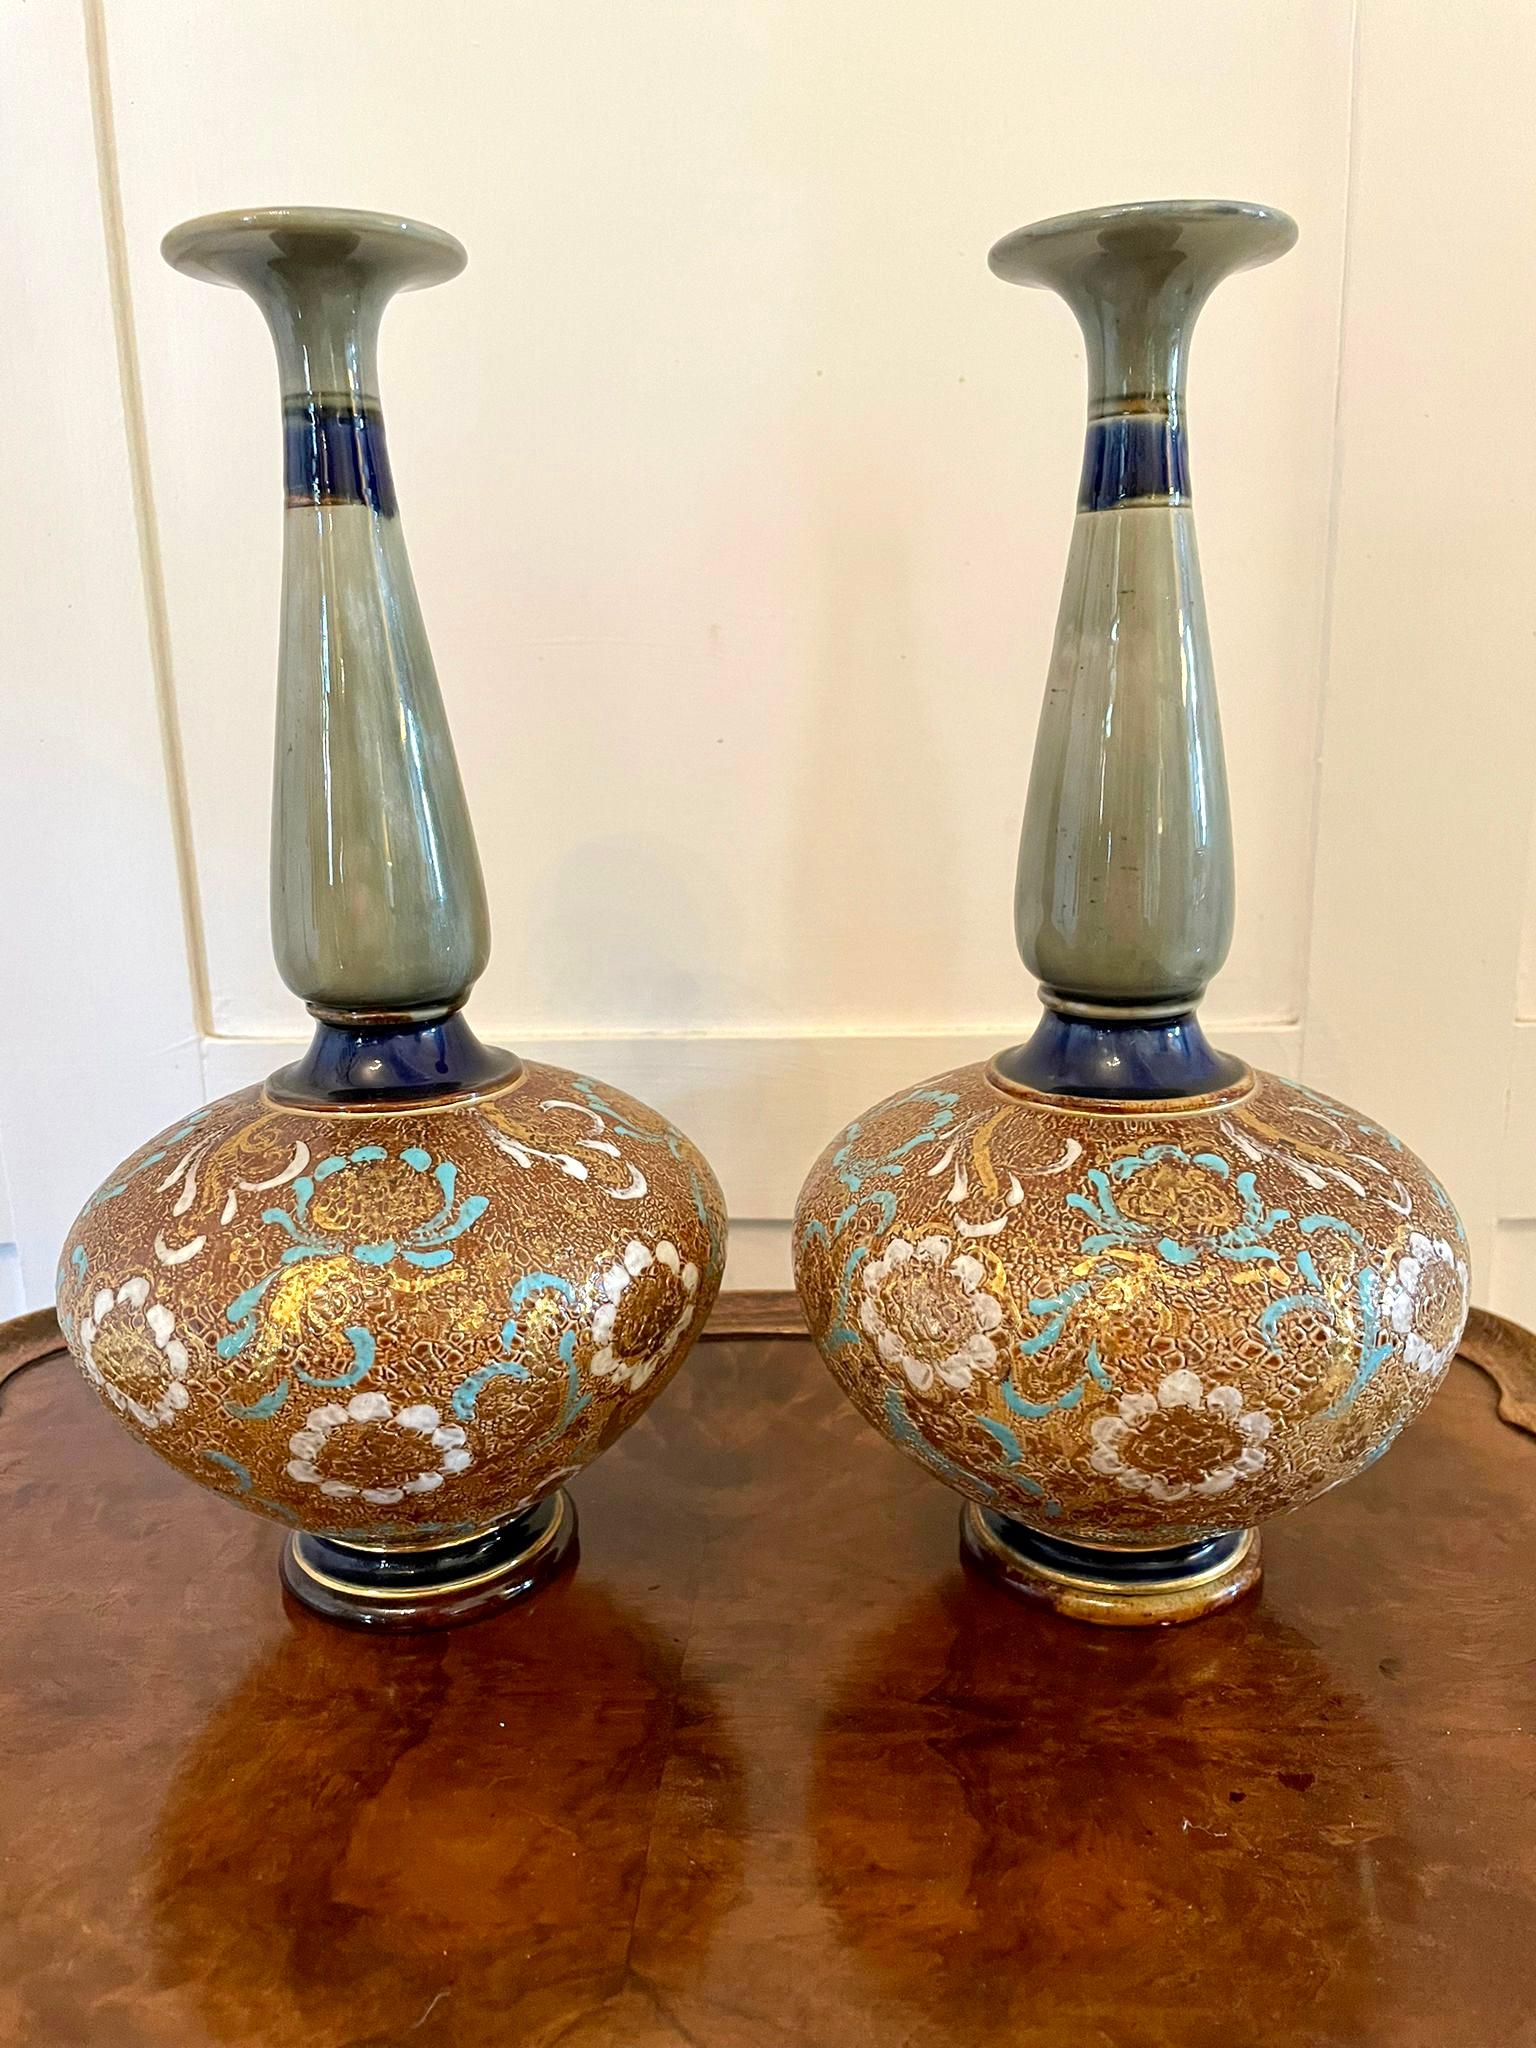 doulton vases antique